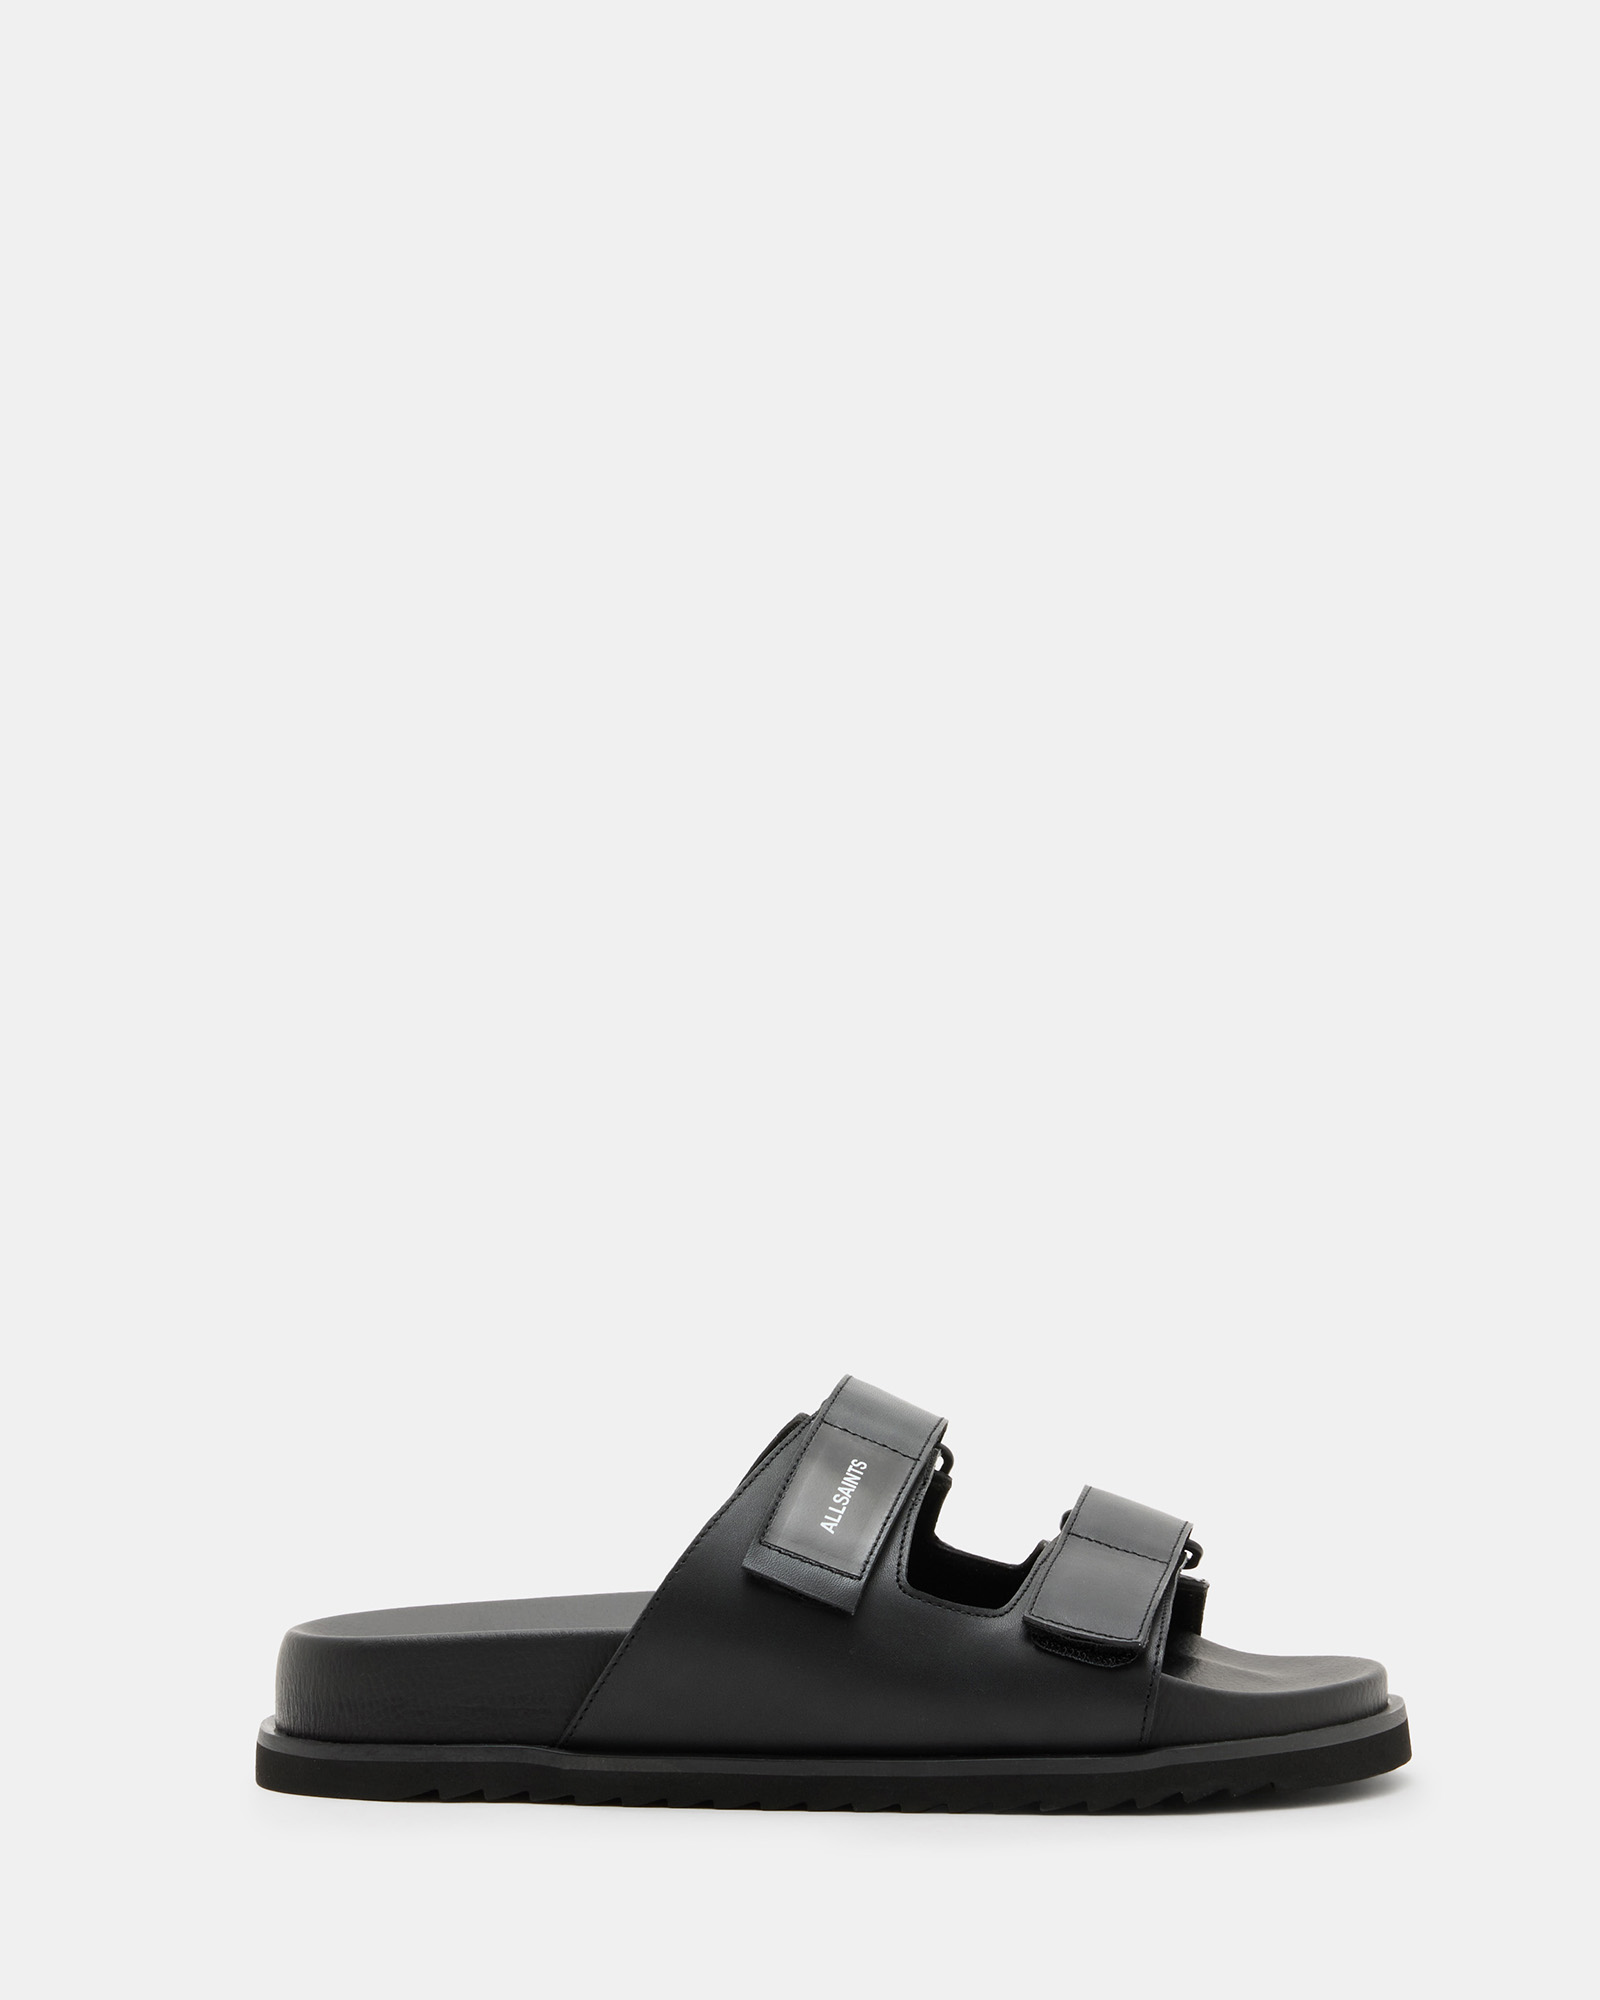 AllSaints Vex Leather Velcro Strap Sandals,, Black